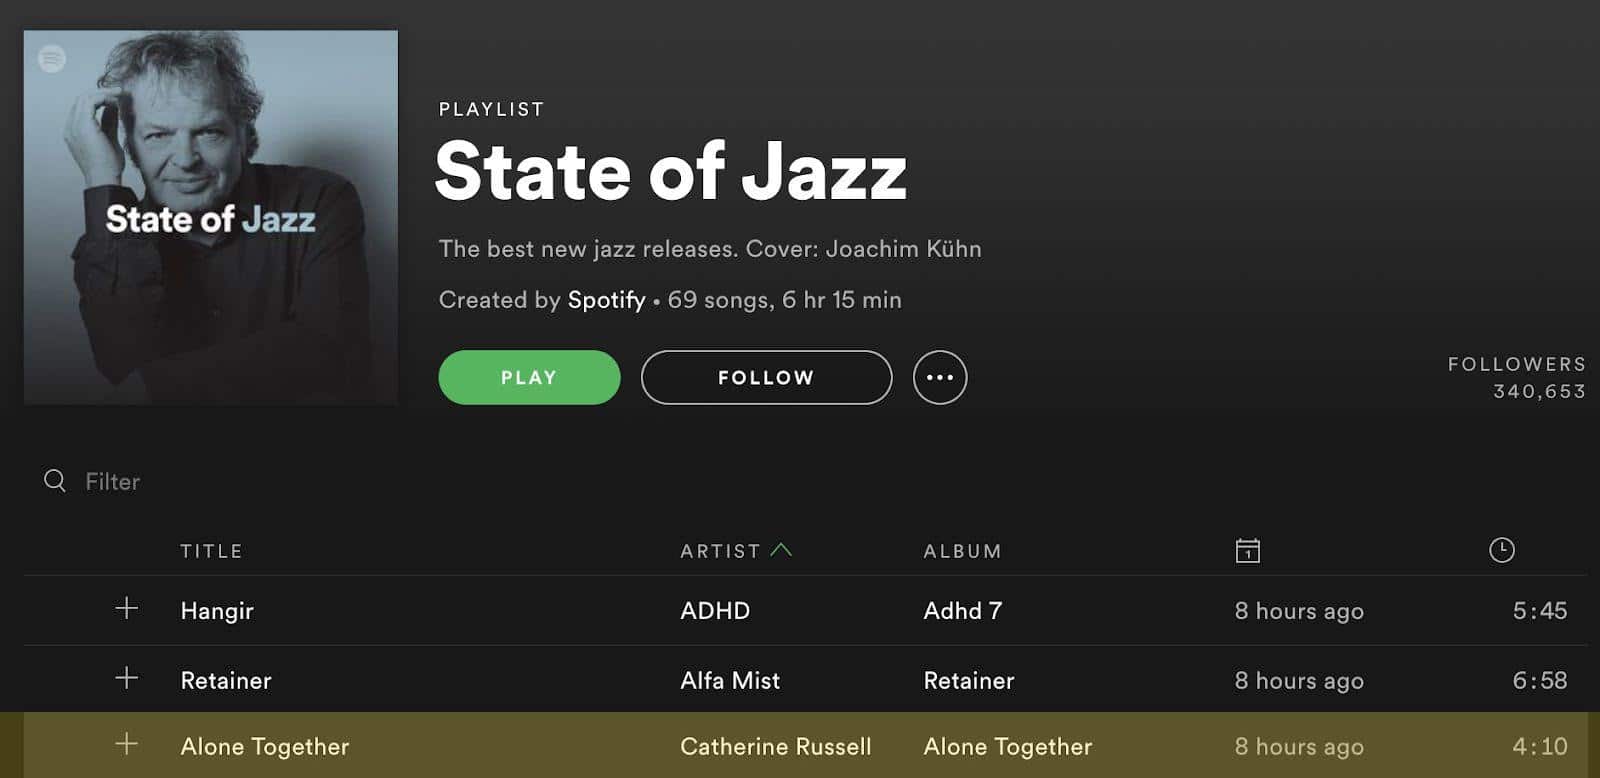 State of Jazz Playlist Pitch